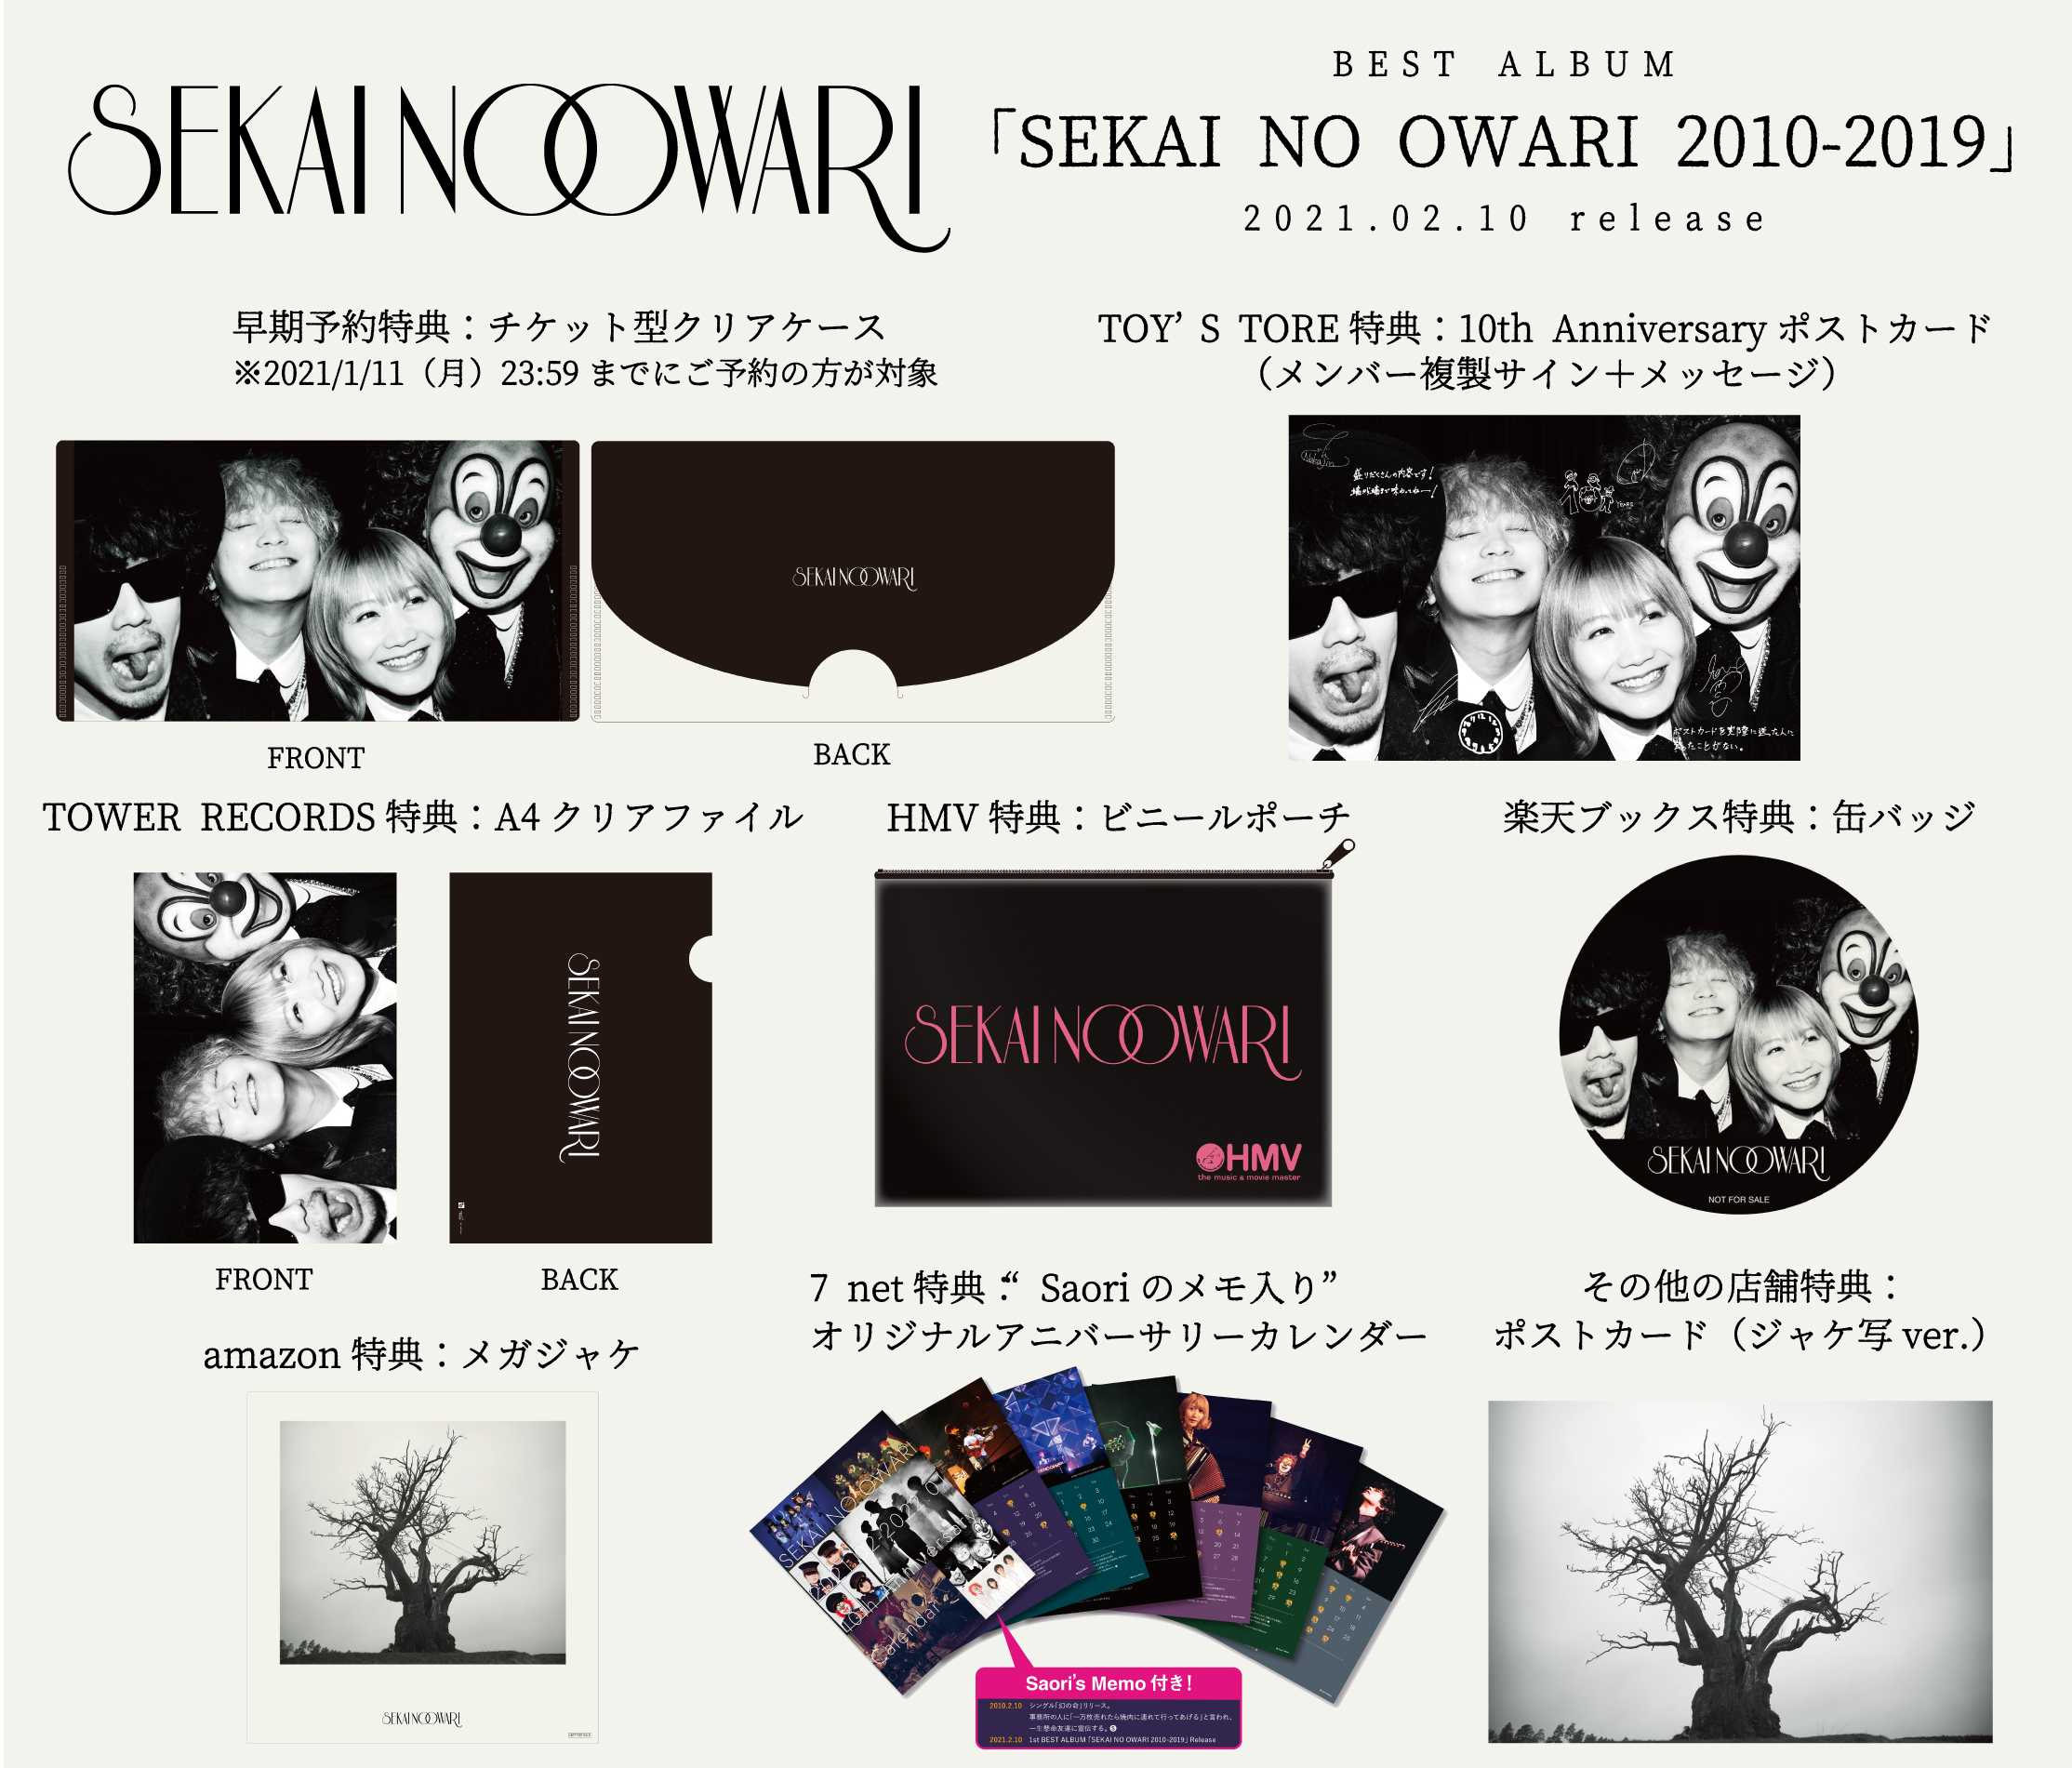 SEKAI NO OWARI、初のベストアルバム『SEKAI NO OWARI 2010-2019』購入者限定特典発表 SPICE  エンタメ特化型情報メディア スパイス